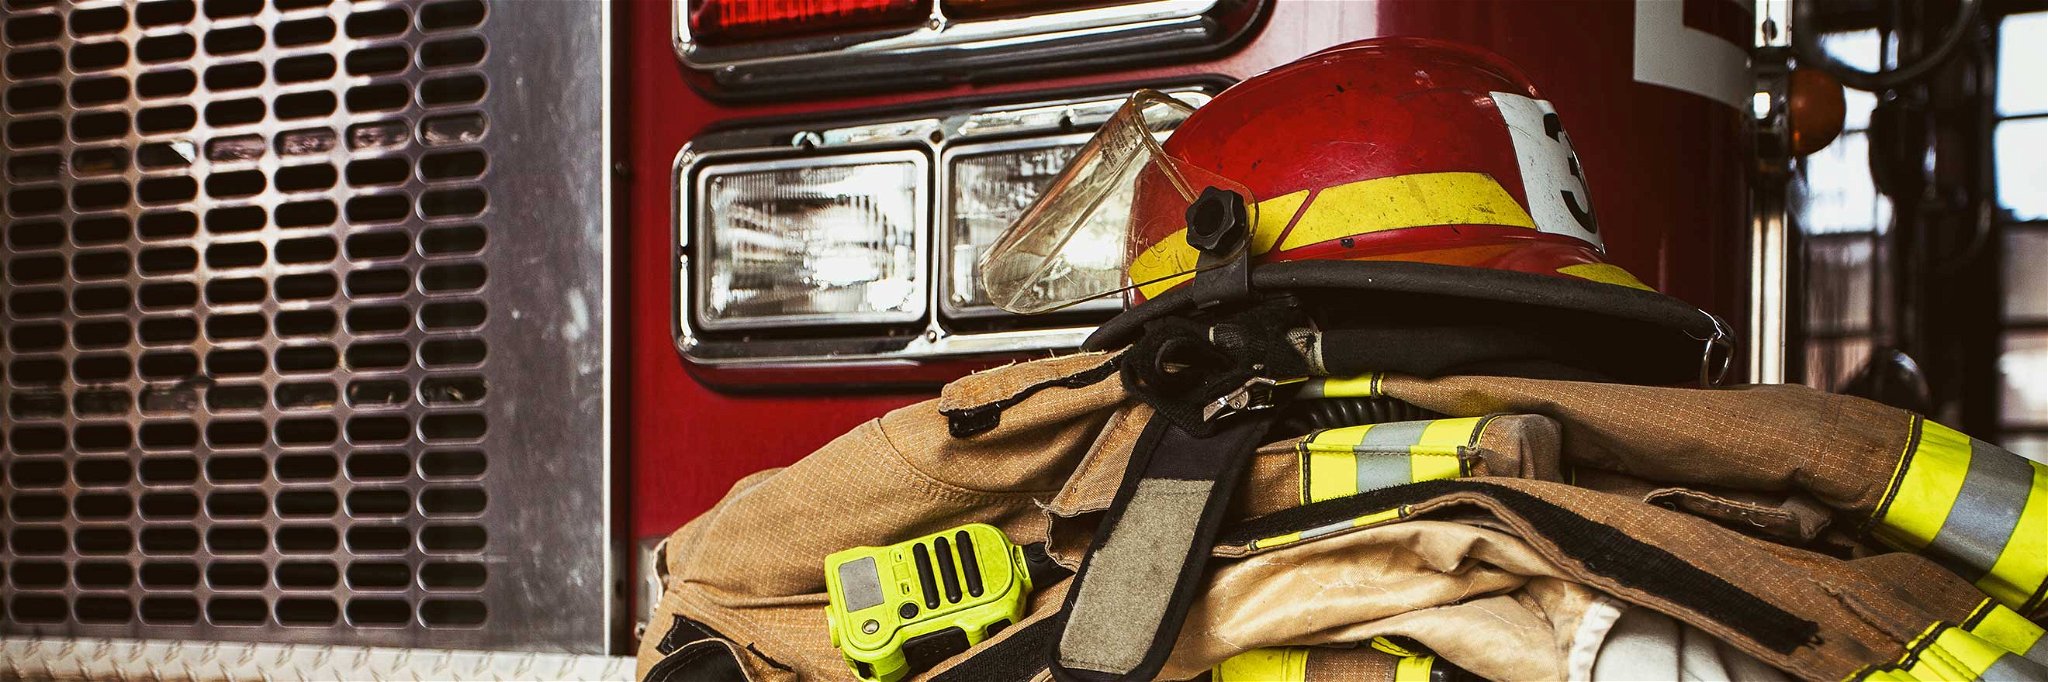 Die Freiwillige Feuerwehr von Duttweiler musste ausrücken, um einen Brand in der Scheune des Weingut Bergdolt zu löschen.